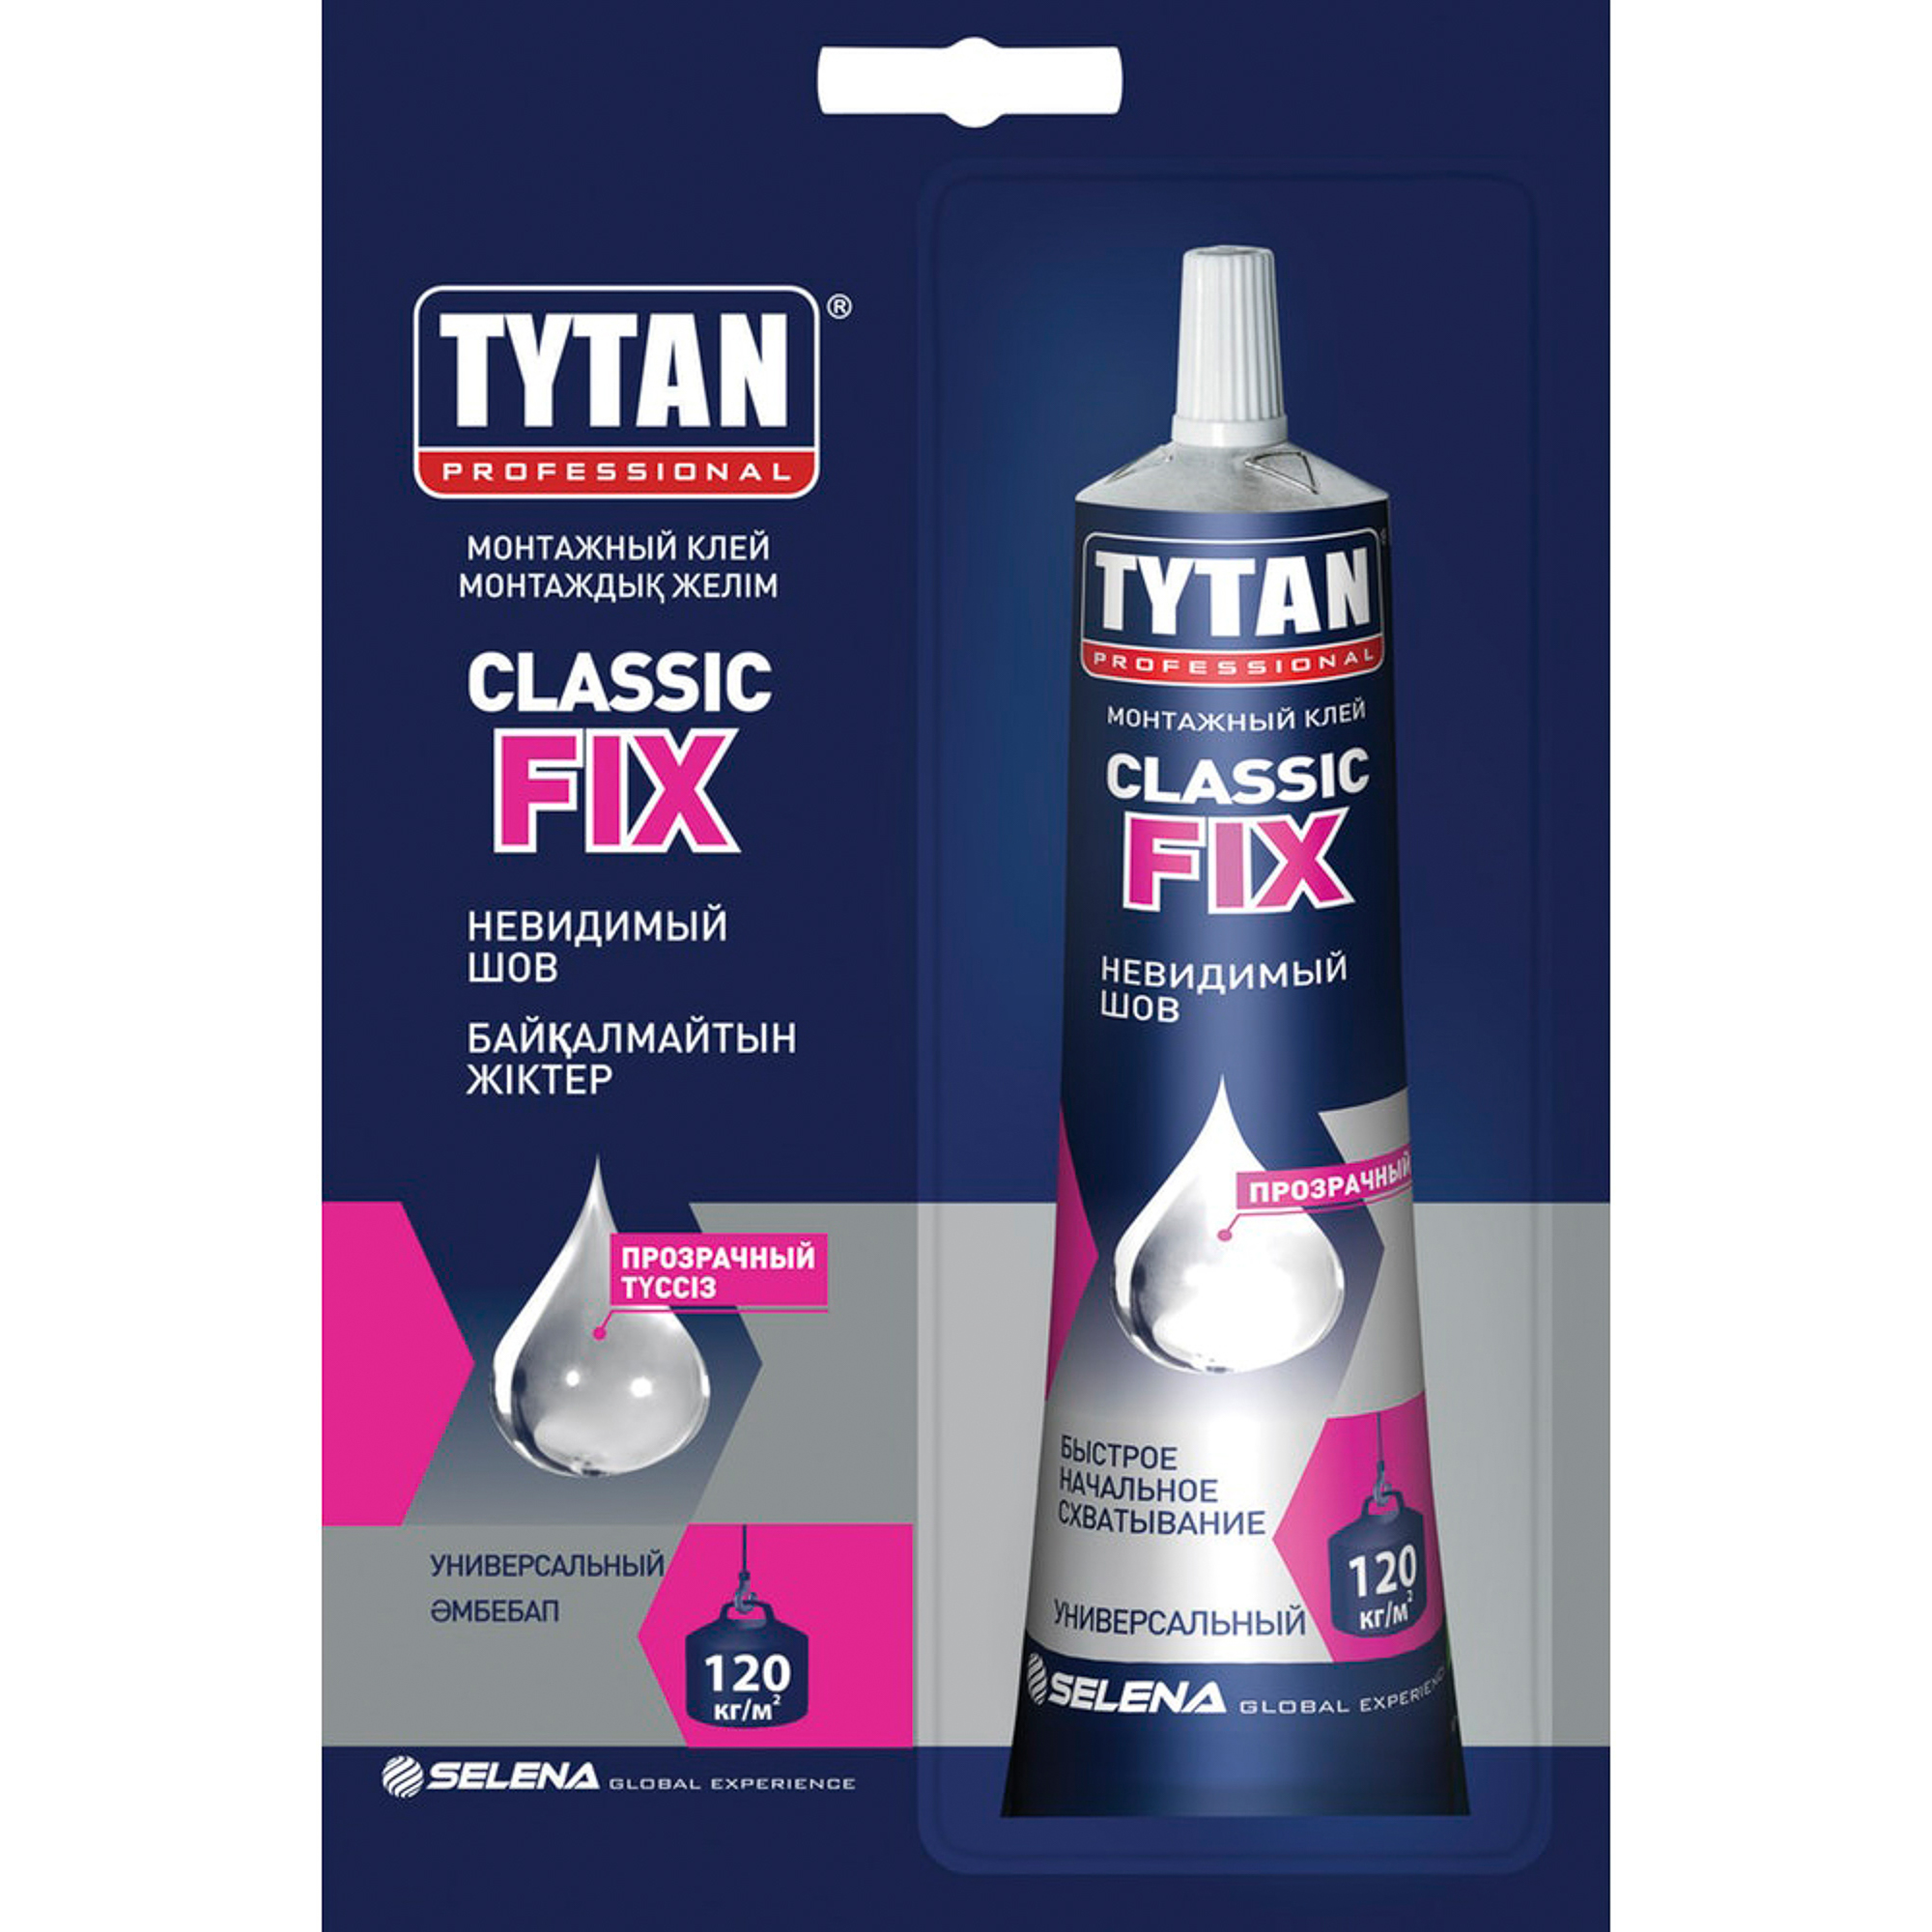 Tytan fix прозрачный. Монтажный клей Tytan professional Classic Fix, прозрачный. Tytan Classic Fix монтажный клей. Монтажный клей Титан фикс. Клей монтажный Tytan Classic Fix, 280 мл, прозрачный.